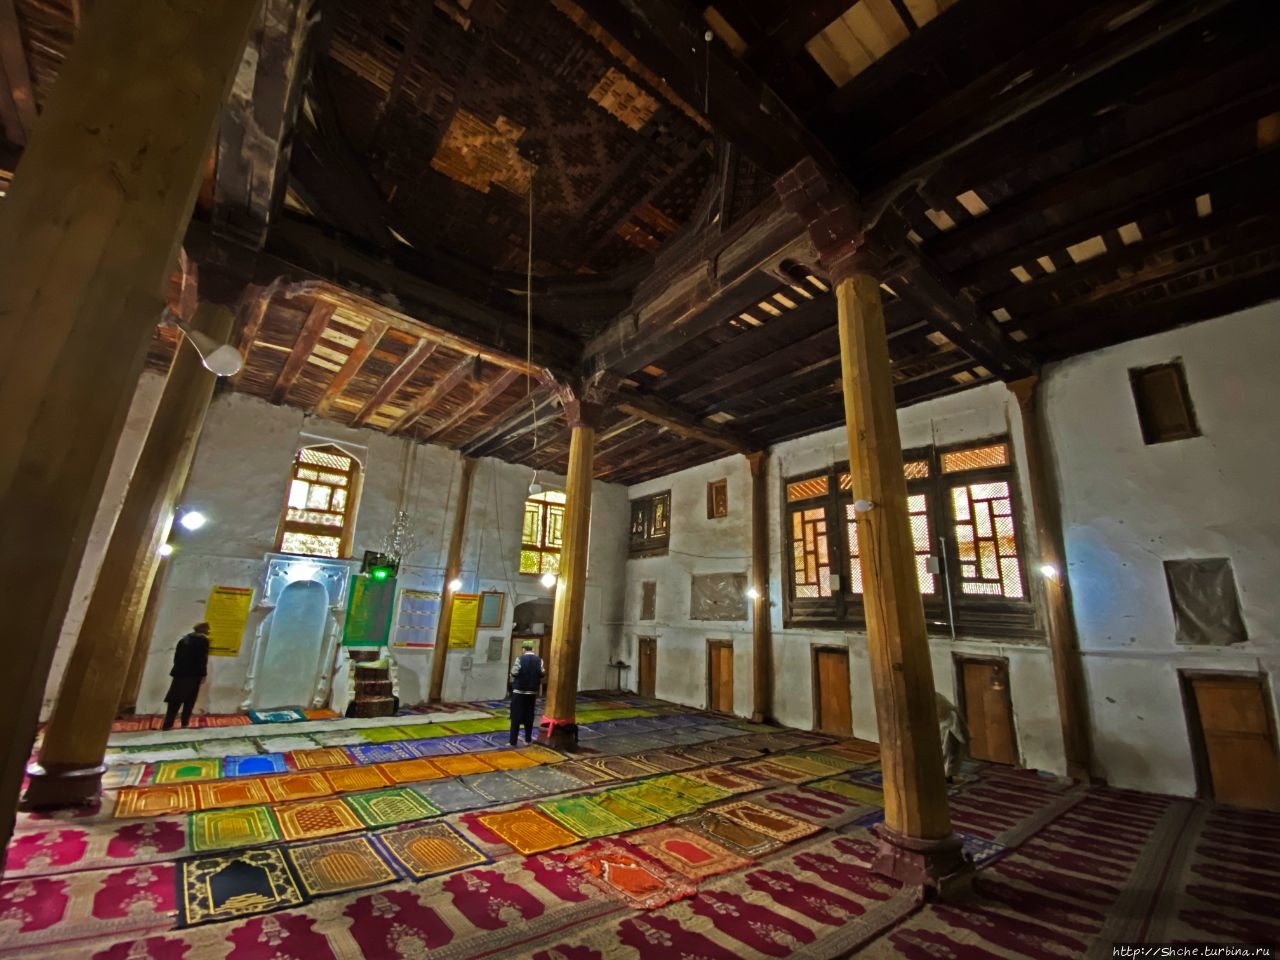 Мечеть Ханда Муалла / Mosque Khanqah Mualla